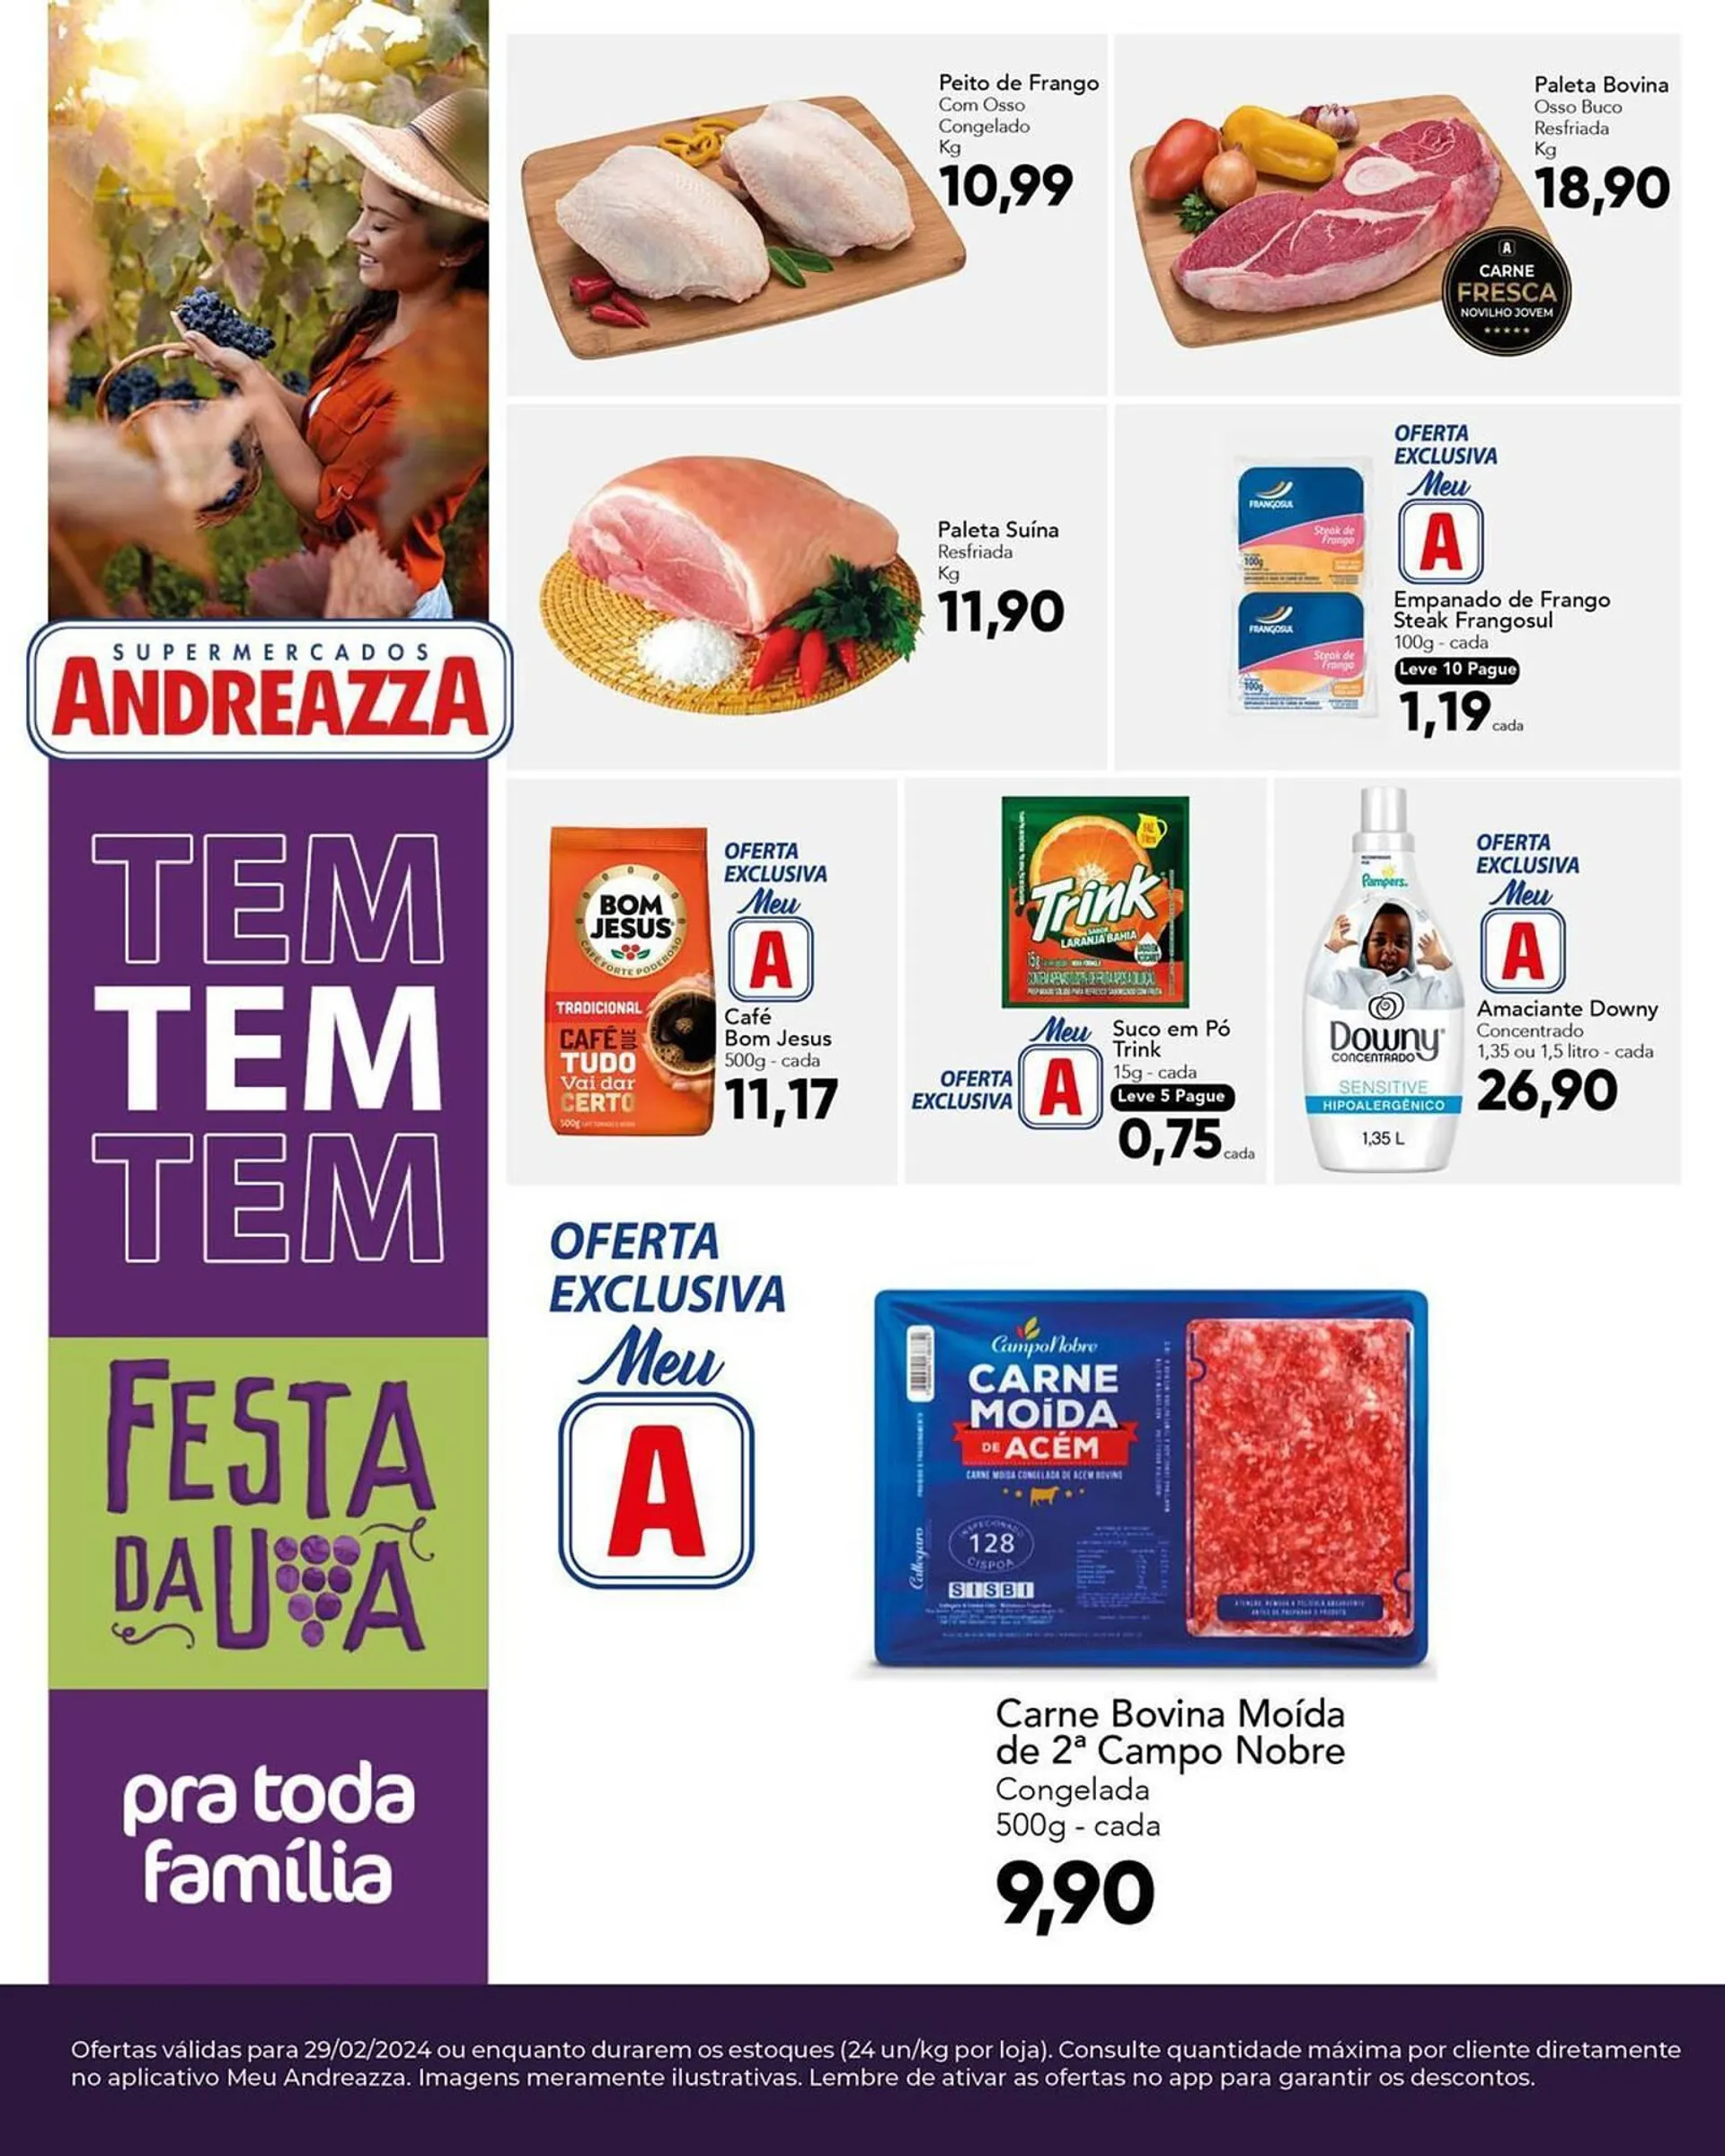 Encarte de Catálogo Supermercados Andreazza 29 de fevereiro até 29 de fevereiro 2024 - Pagina 